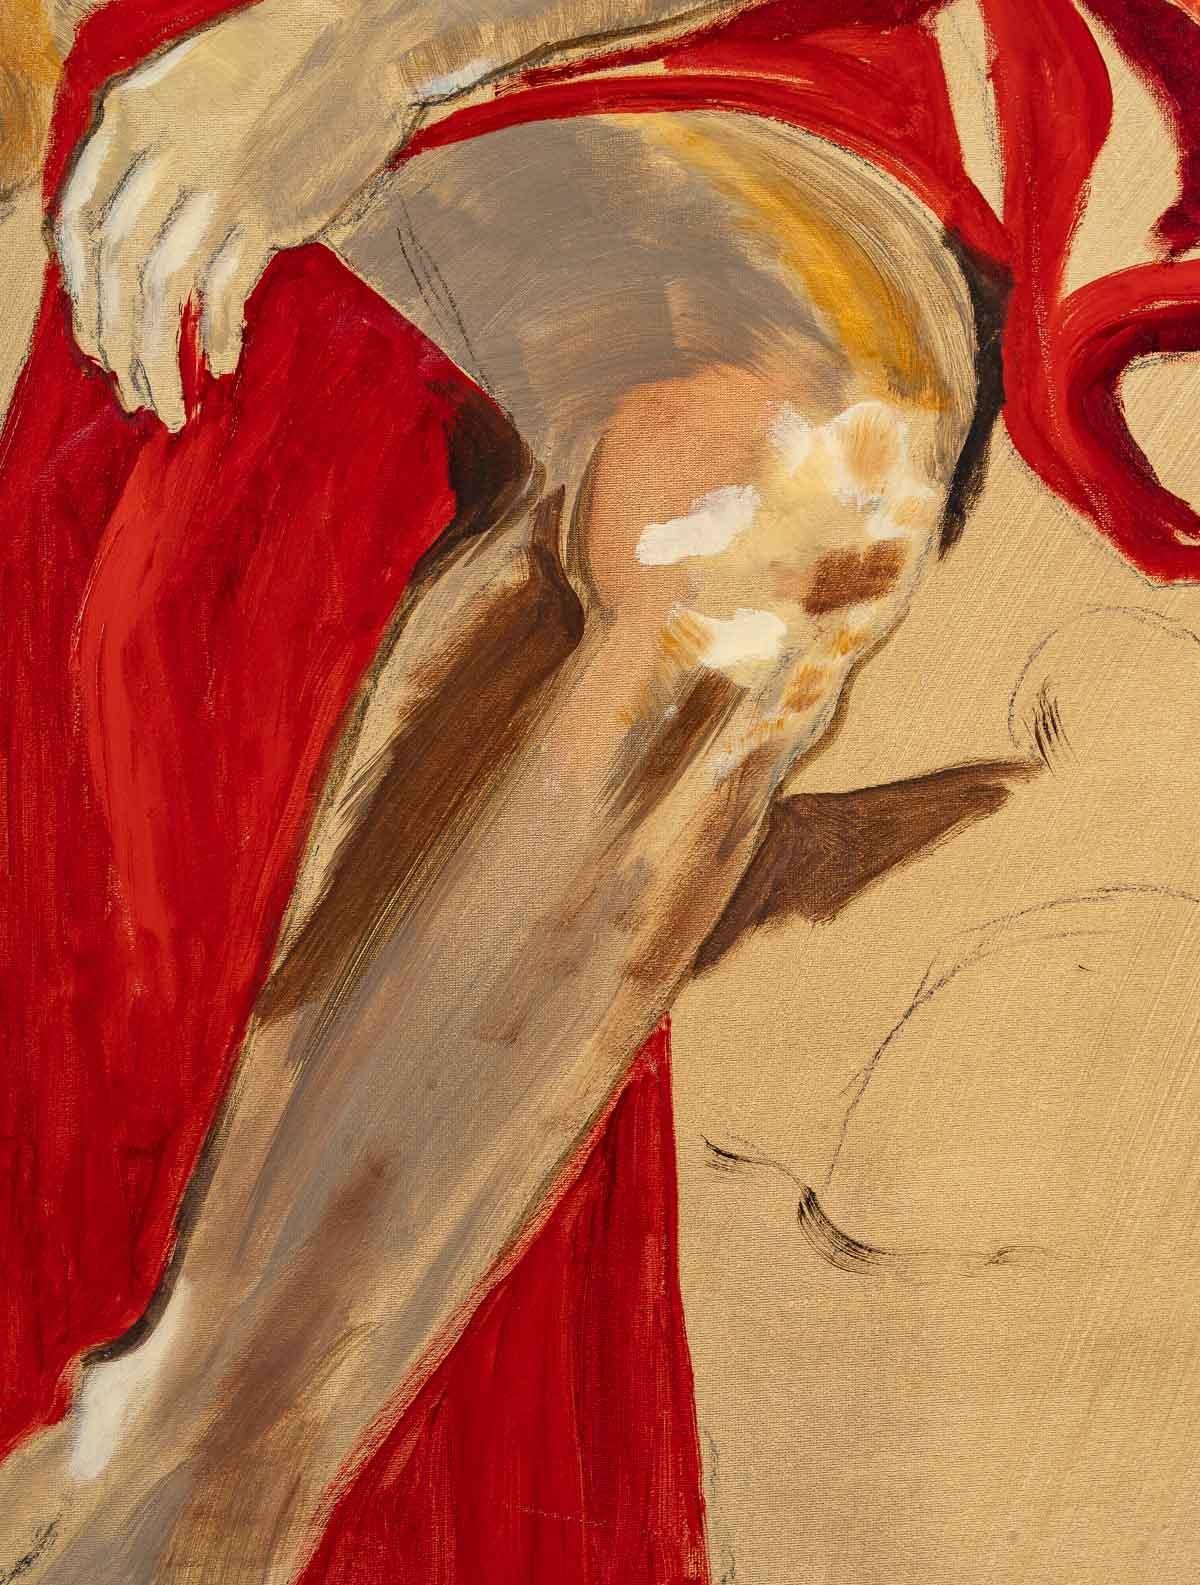 Peinture d'un homme, 20ème siècle
Grande peinture d'un homme à l'ancienne dans une cape rouge, 20e siècle, non signée, non encadrée.
H : 100 cm, L : 65 cm, P : 2,5 cm